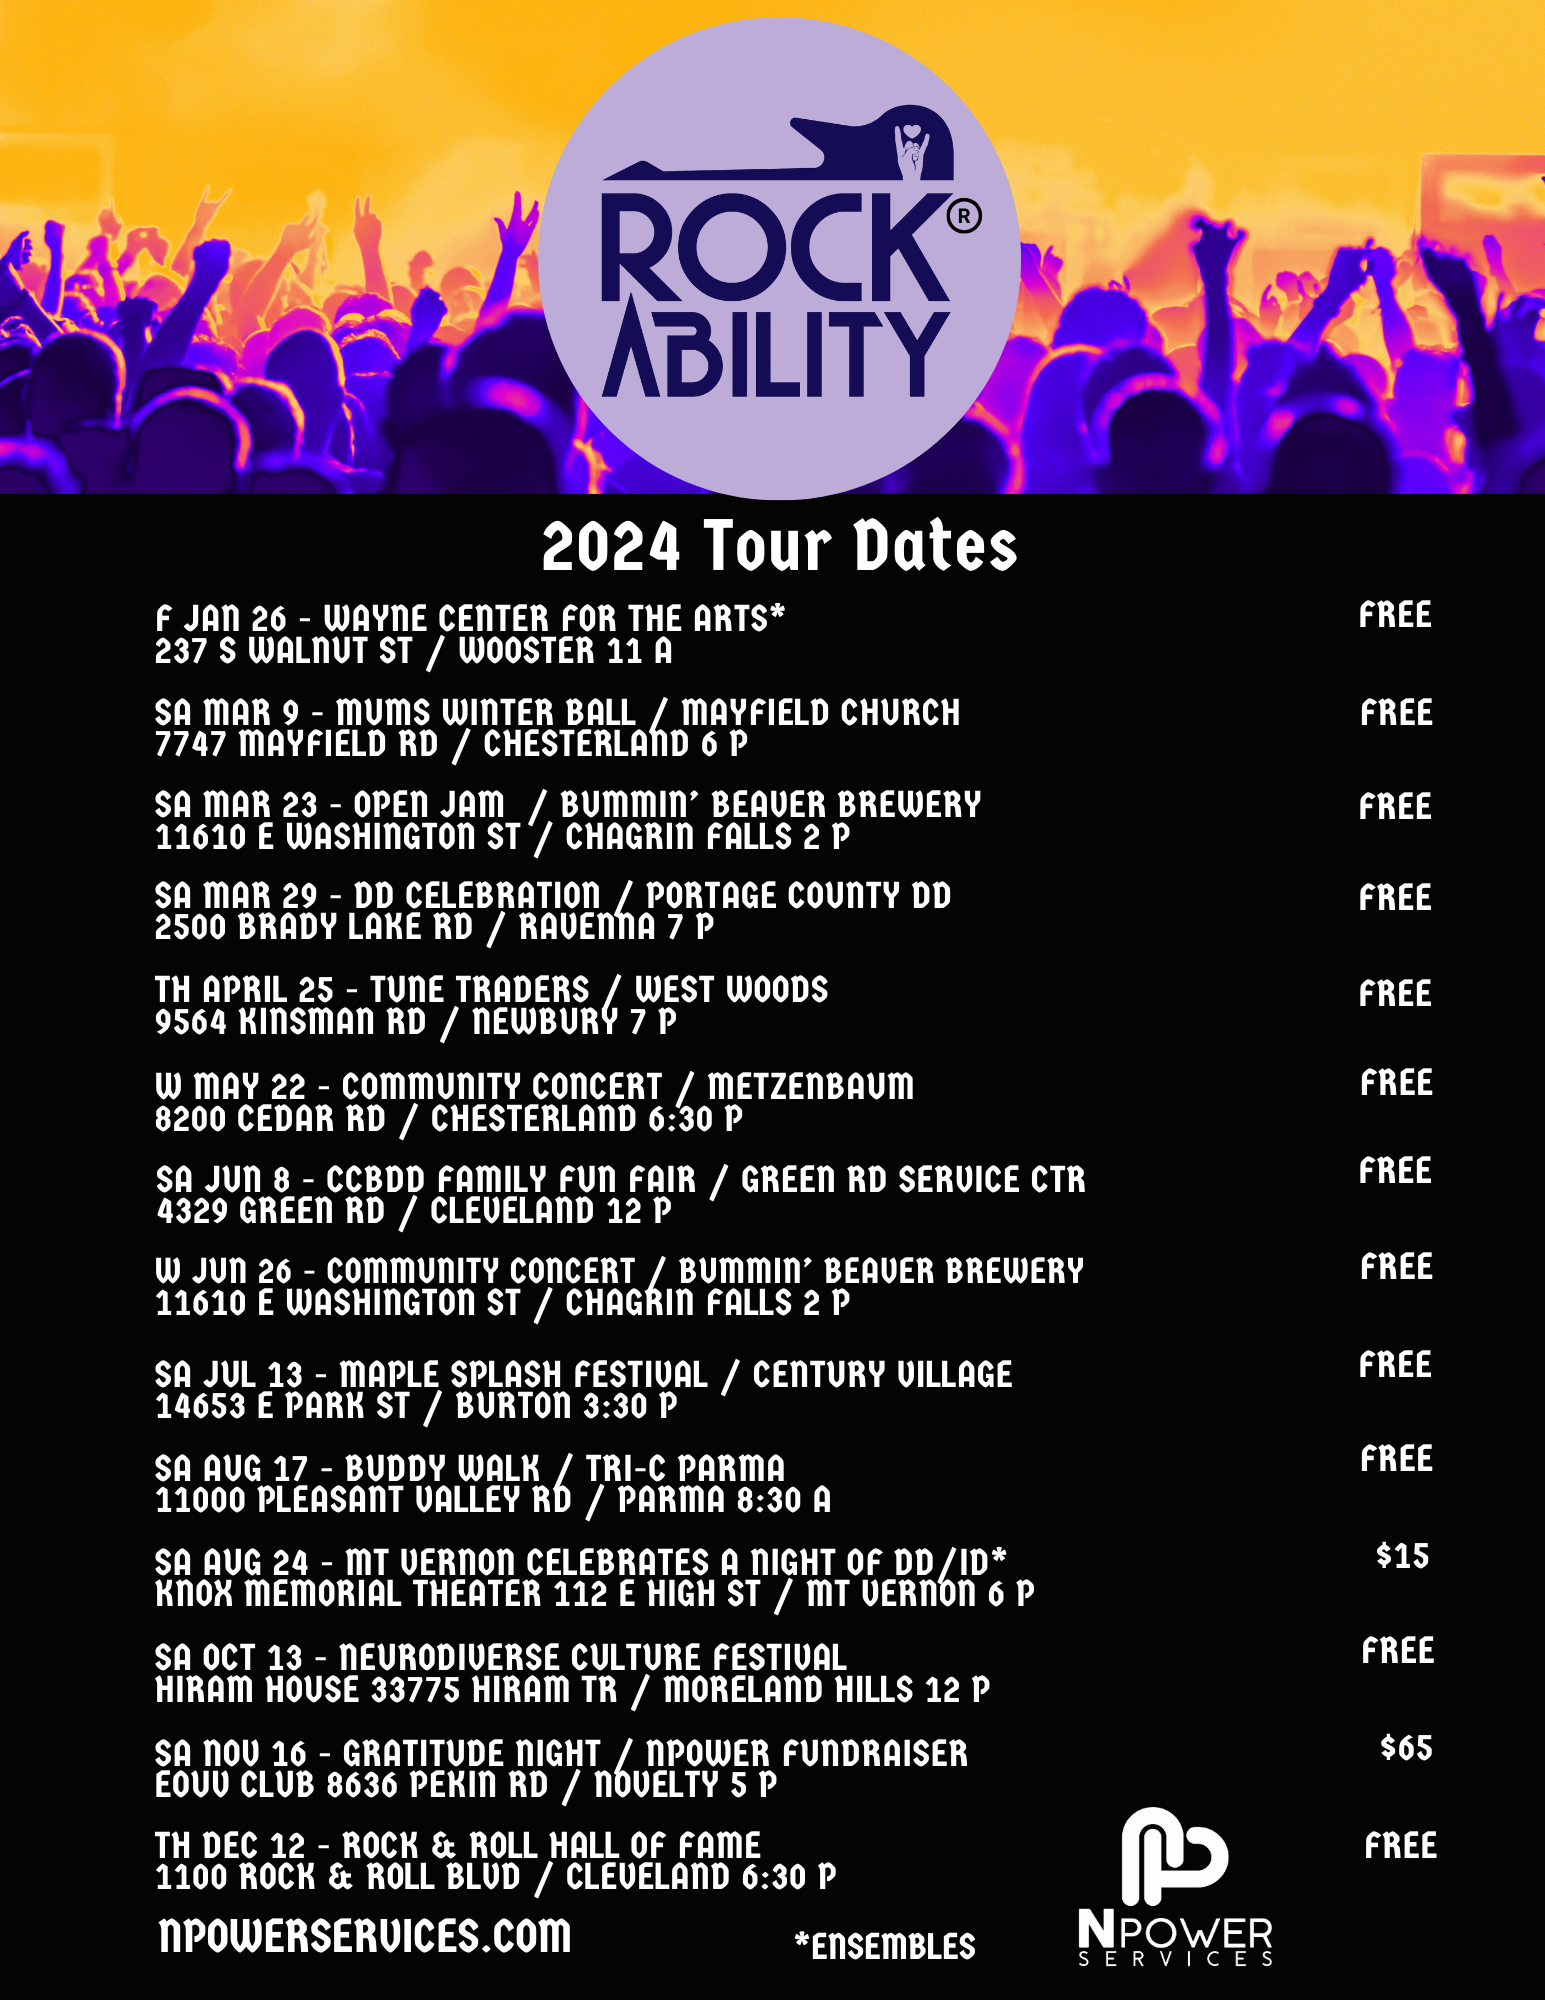 RockAbility 2024 Tour Dates 8.5x11